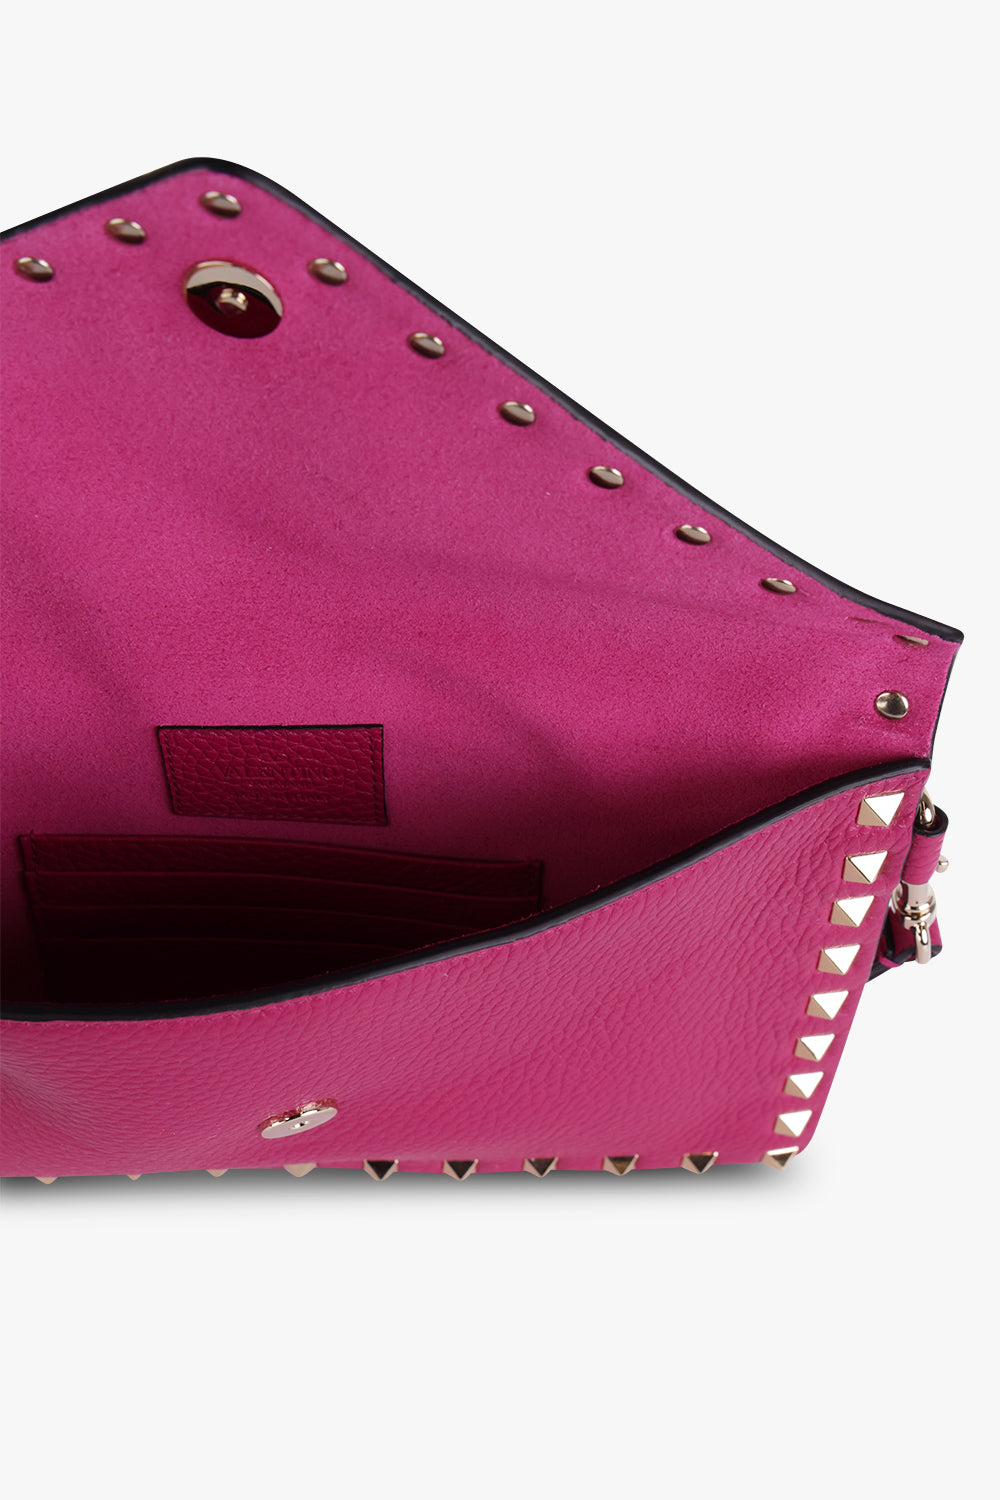 Valentino Garavani Pink Rockstud Large Leather Envelope Clutch Bag In Rosa